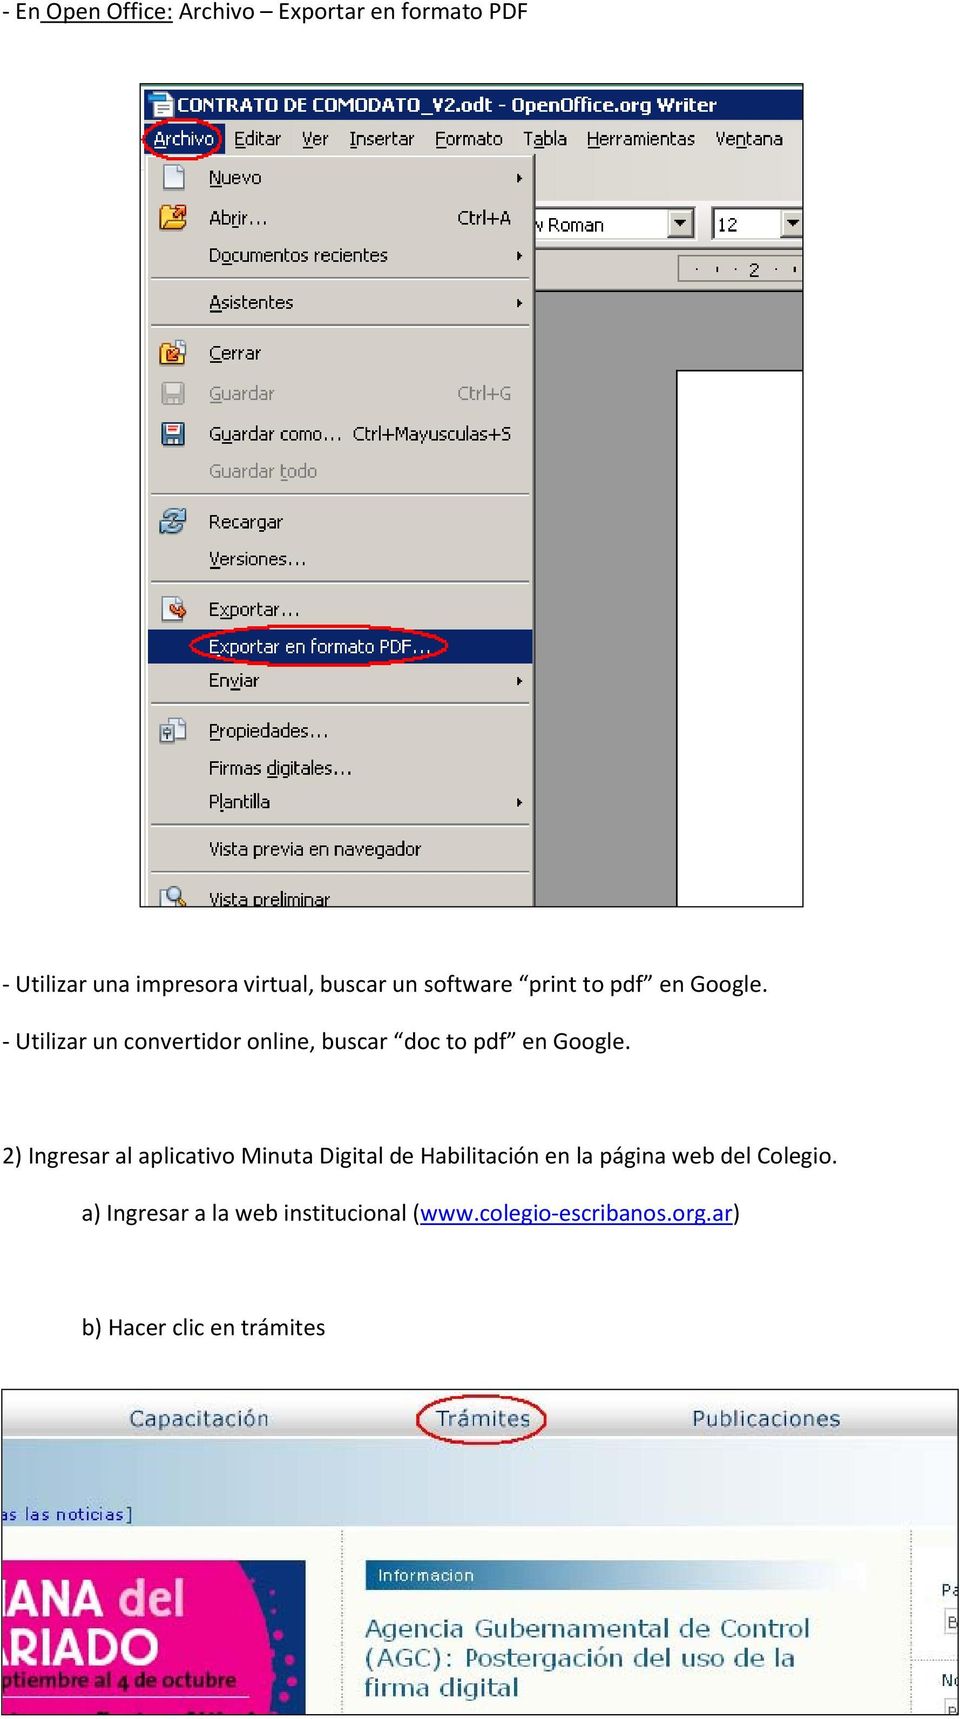 - Utilizar un convertidor online, buscar doc to pdf en Google.